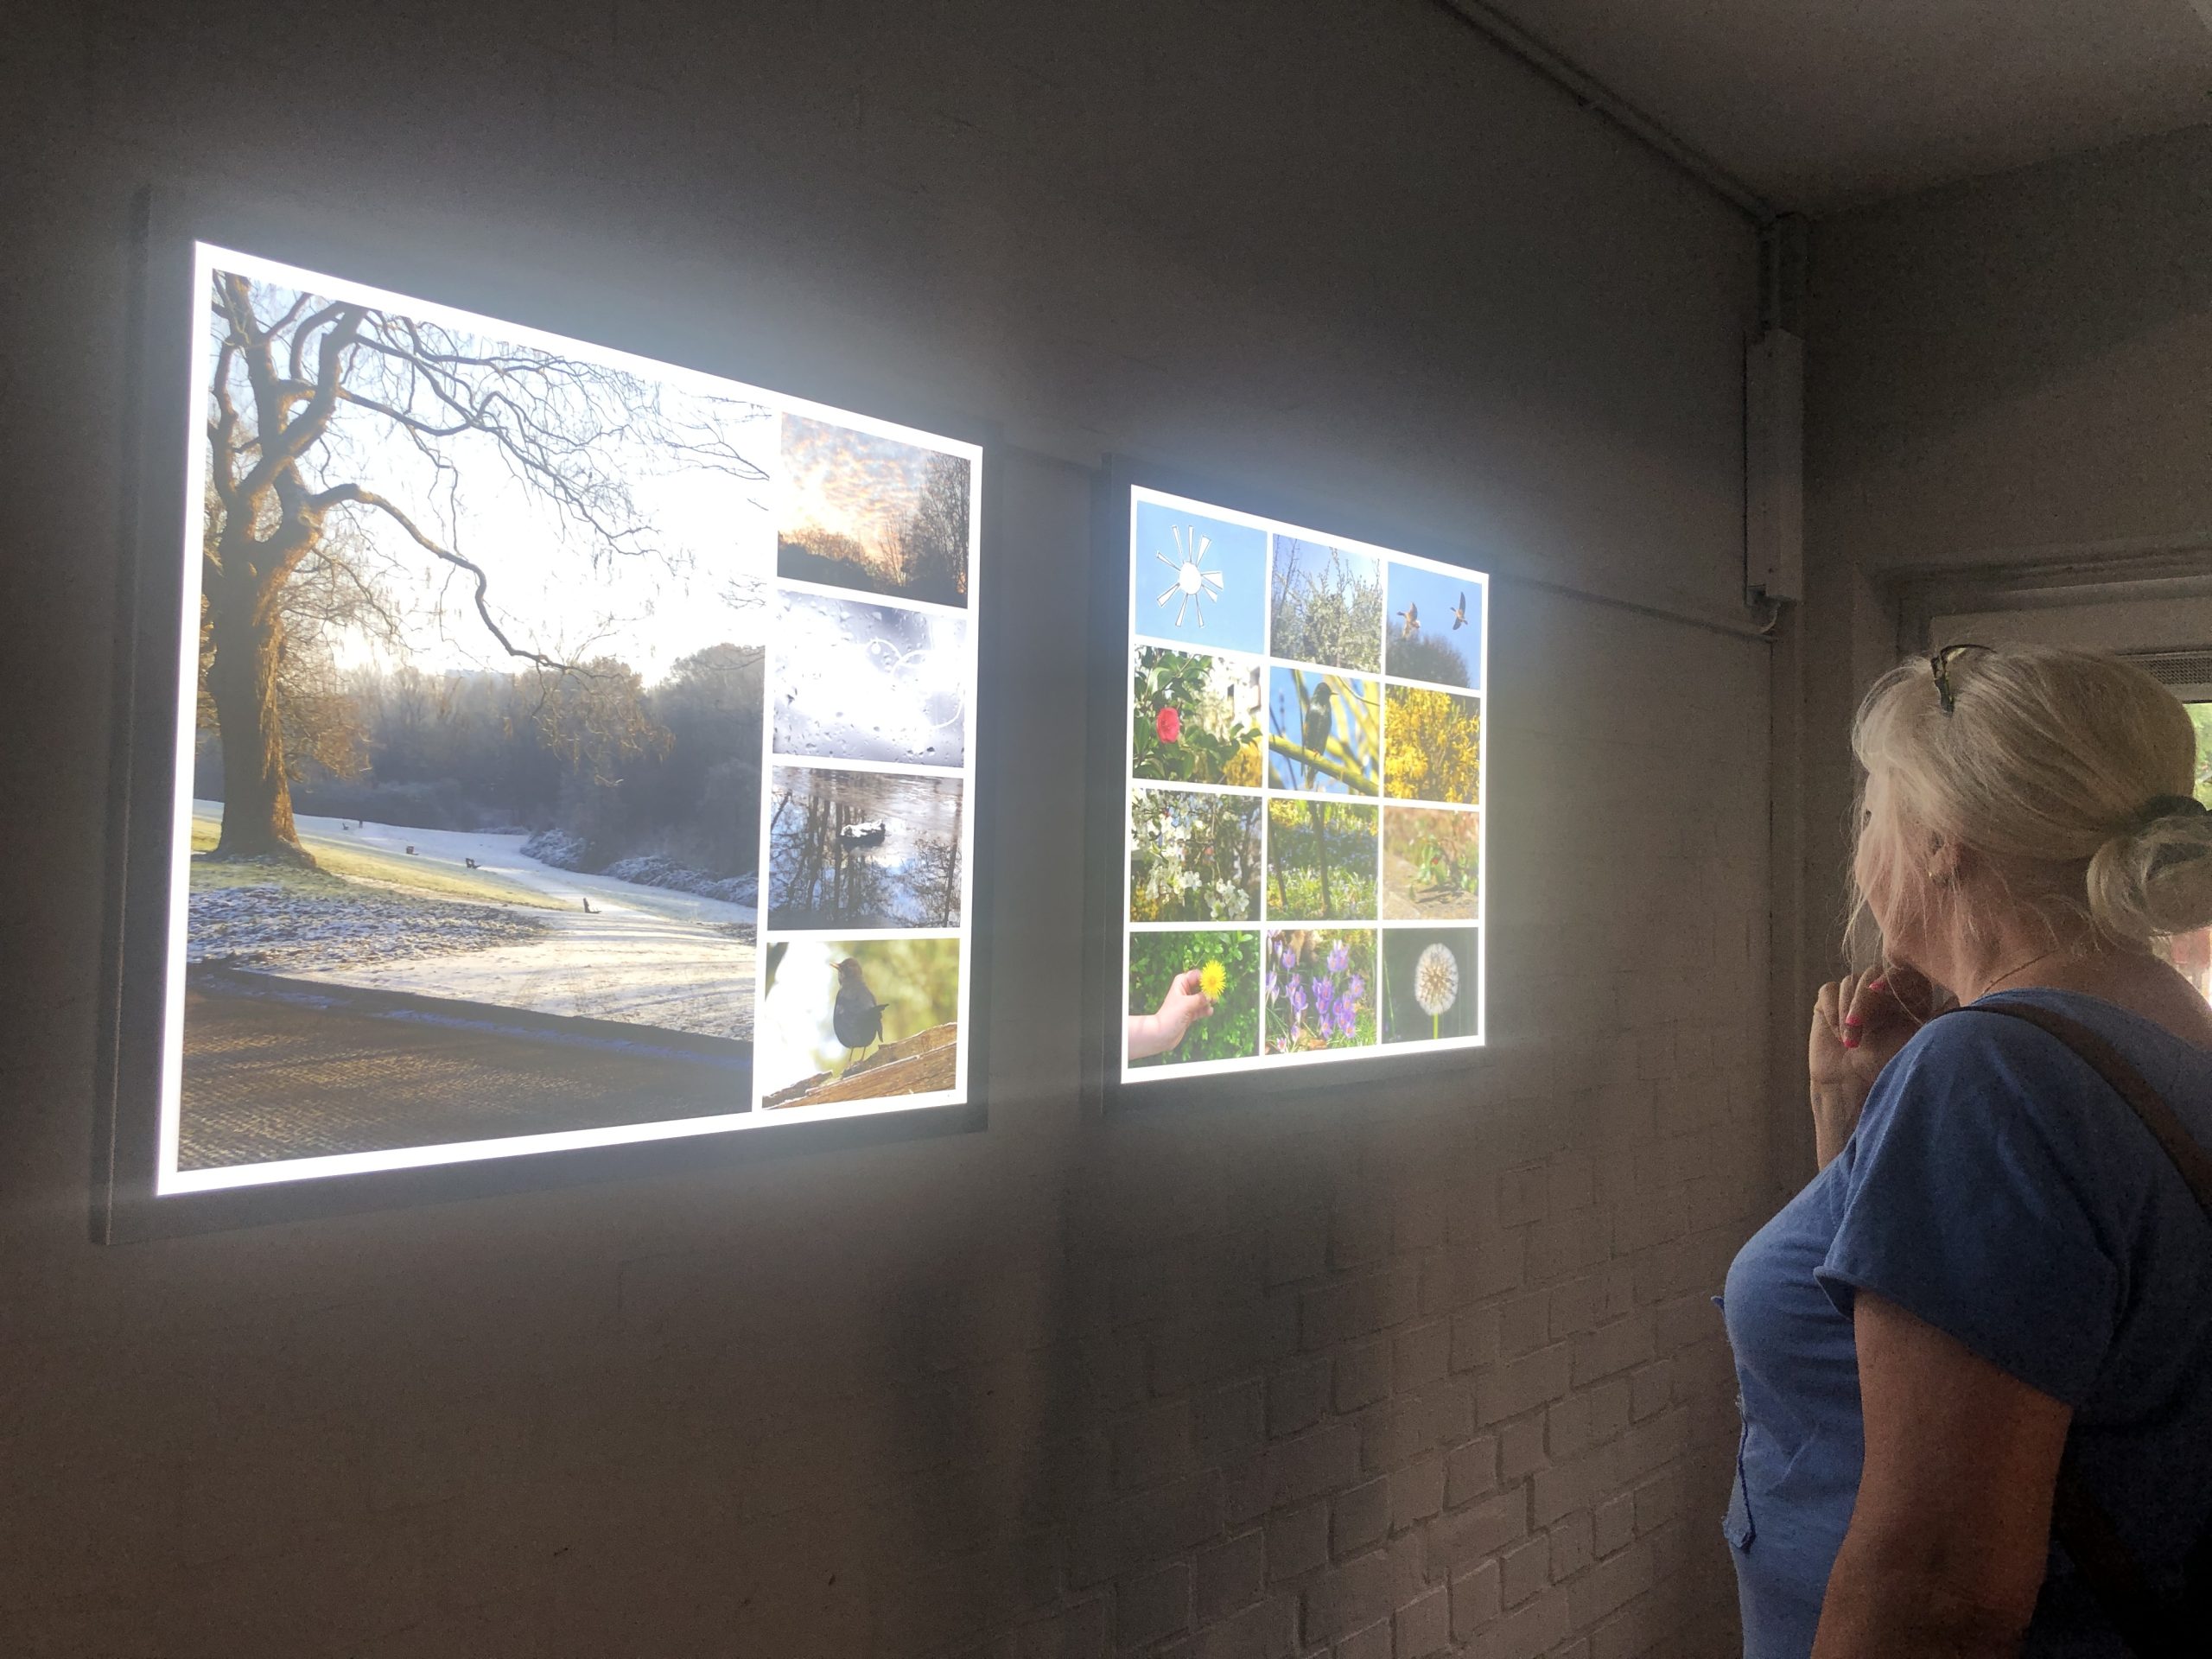 Frau betrachtet Treppenhausgalerie mit zwei Leuchtkästen mit Fotos von verschiedene Naturmotiven